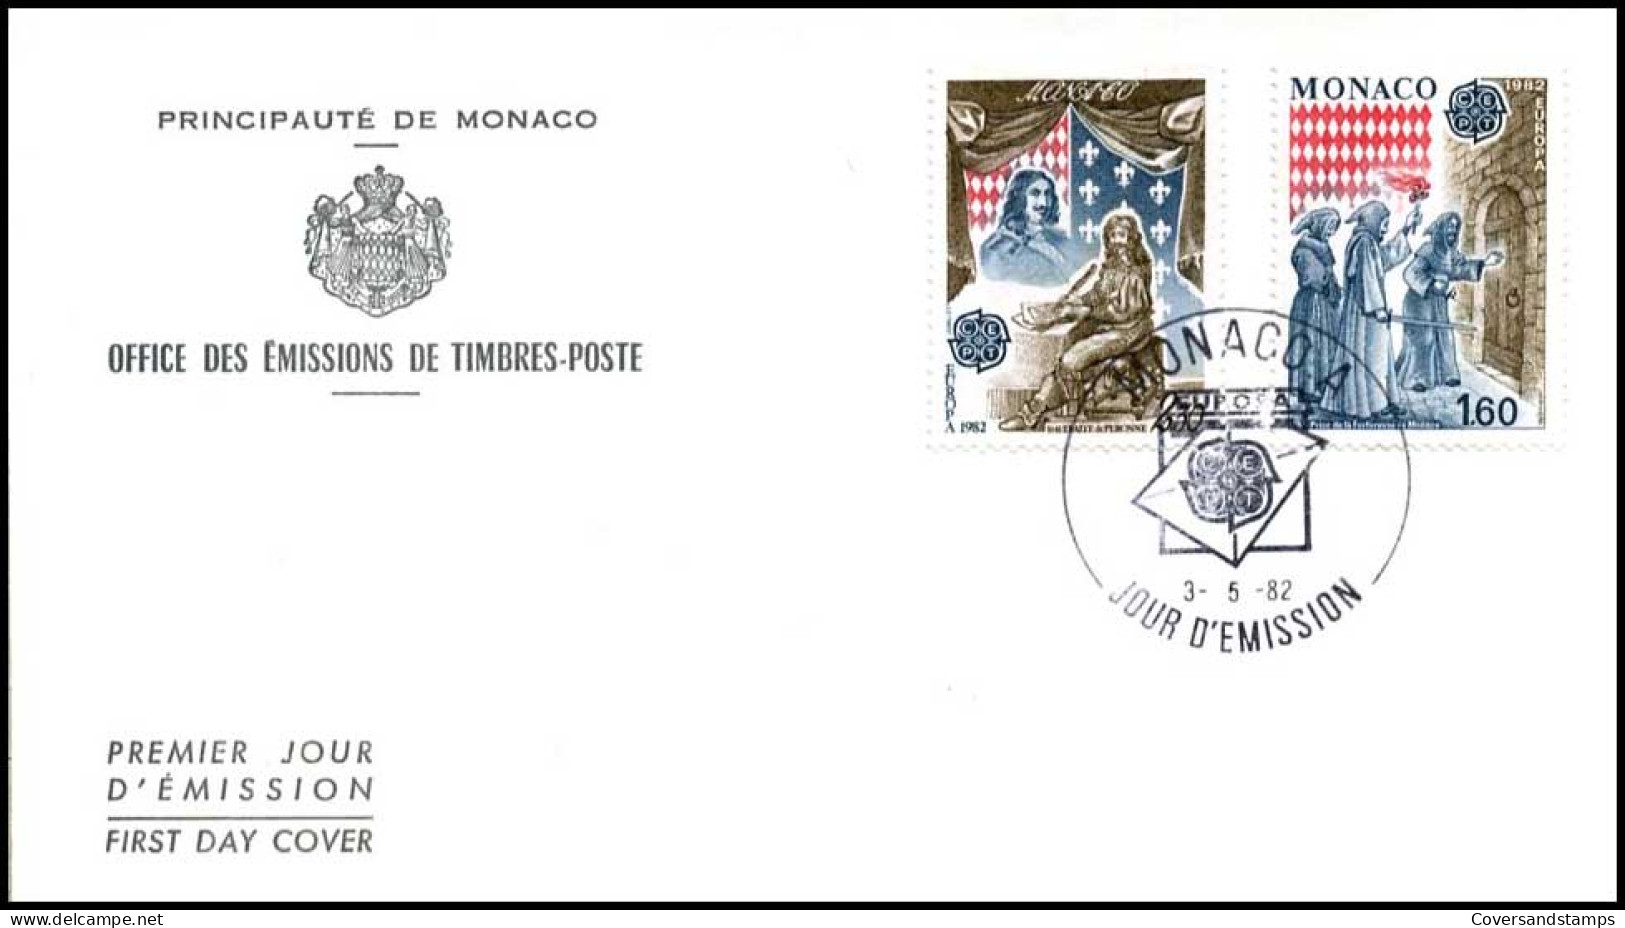  Monaco - FDC - Europa CEPT 1982 - 1982